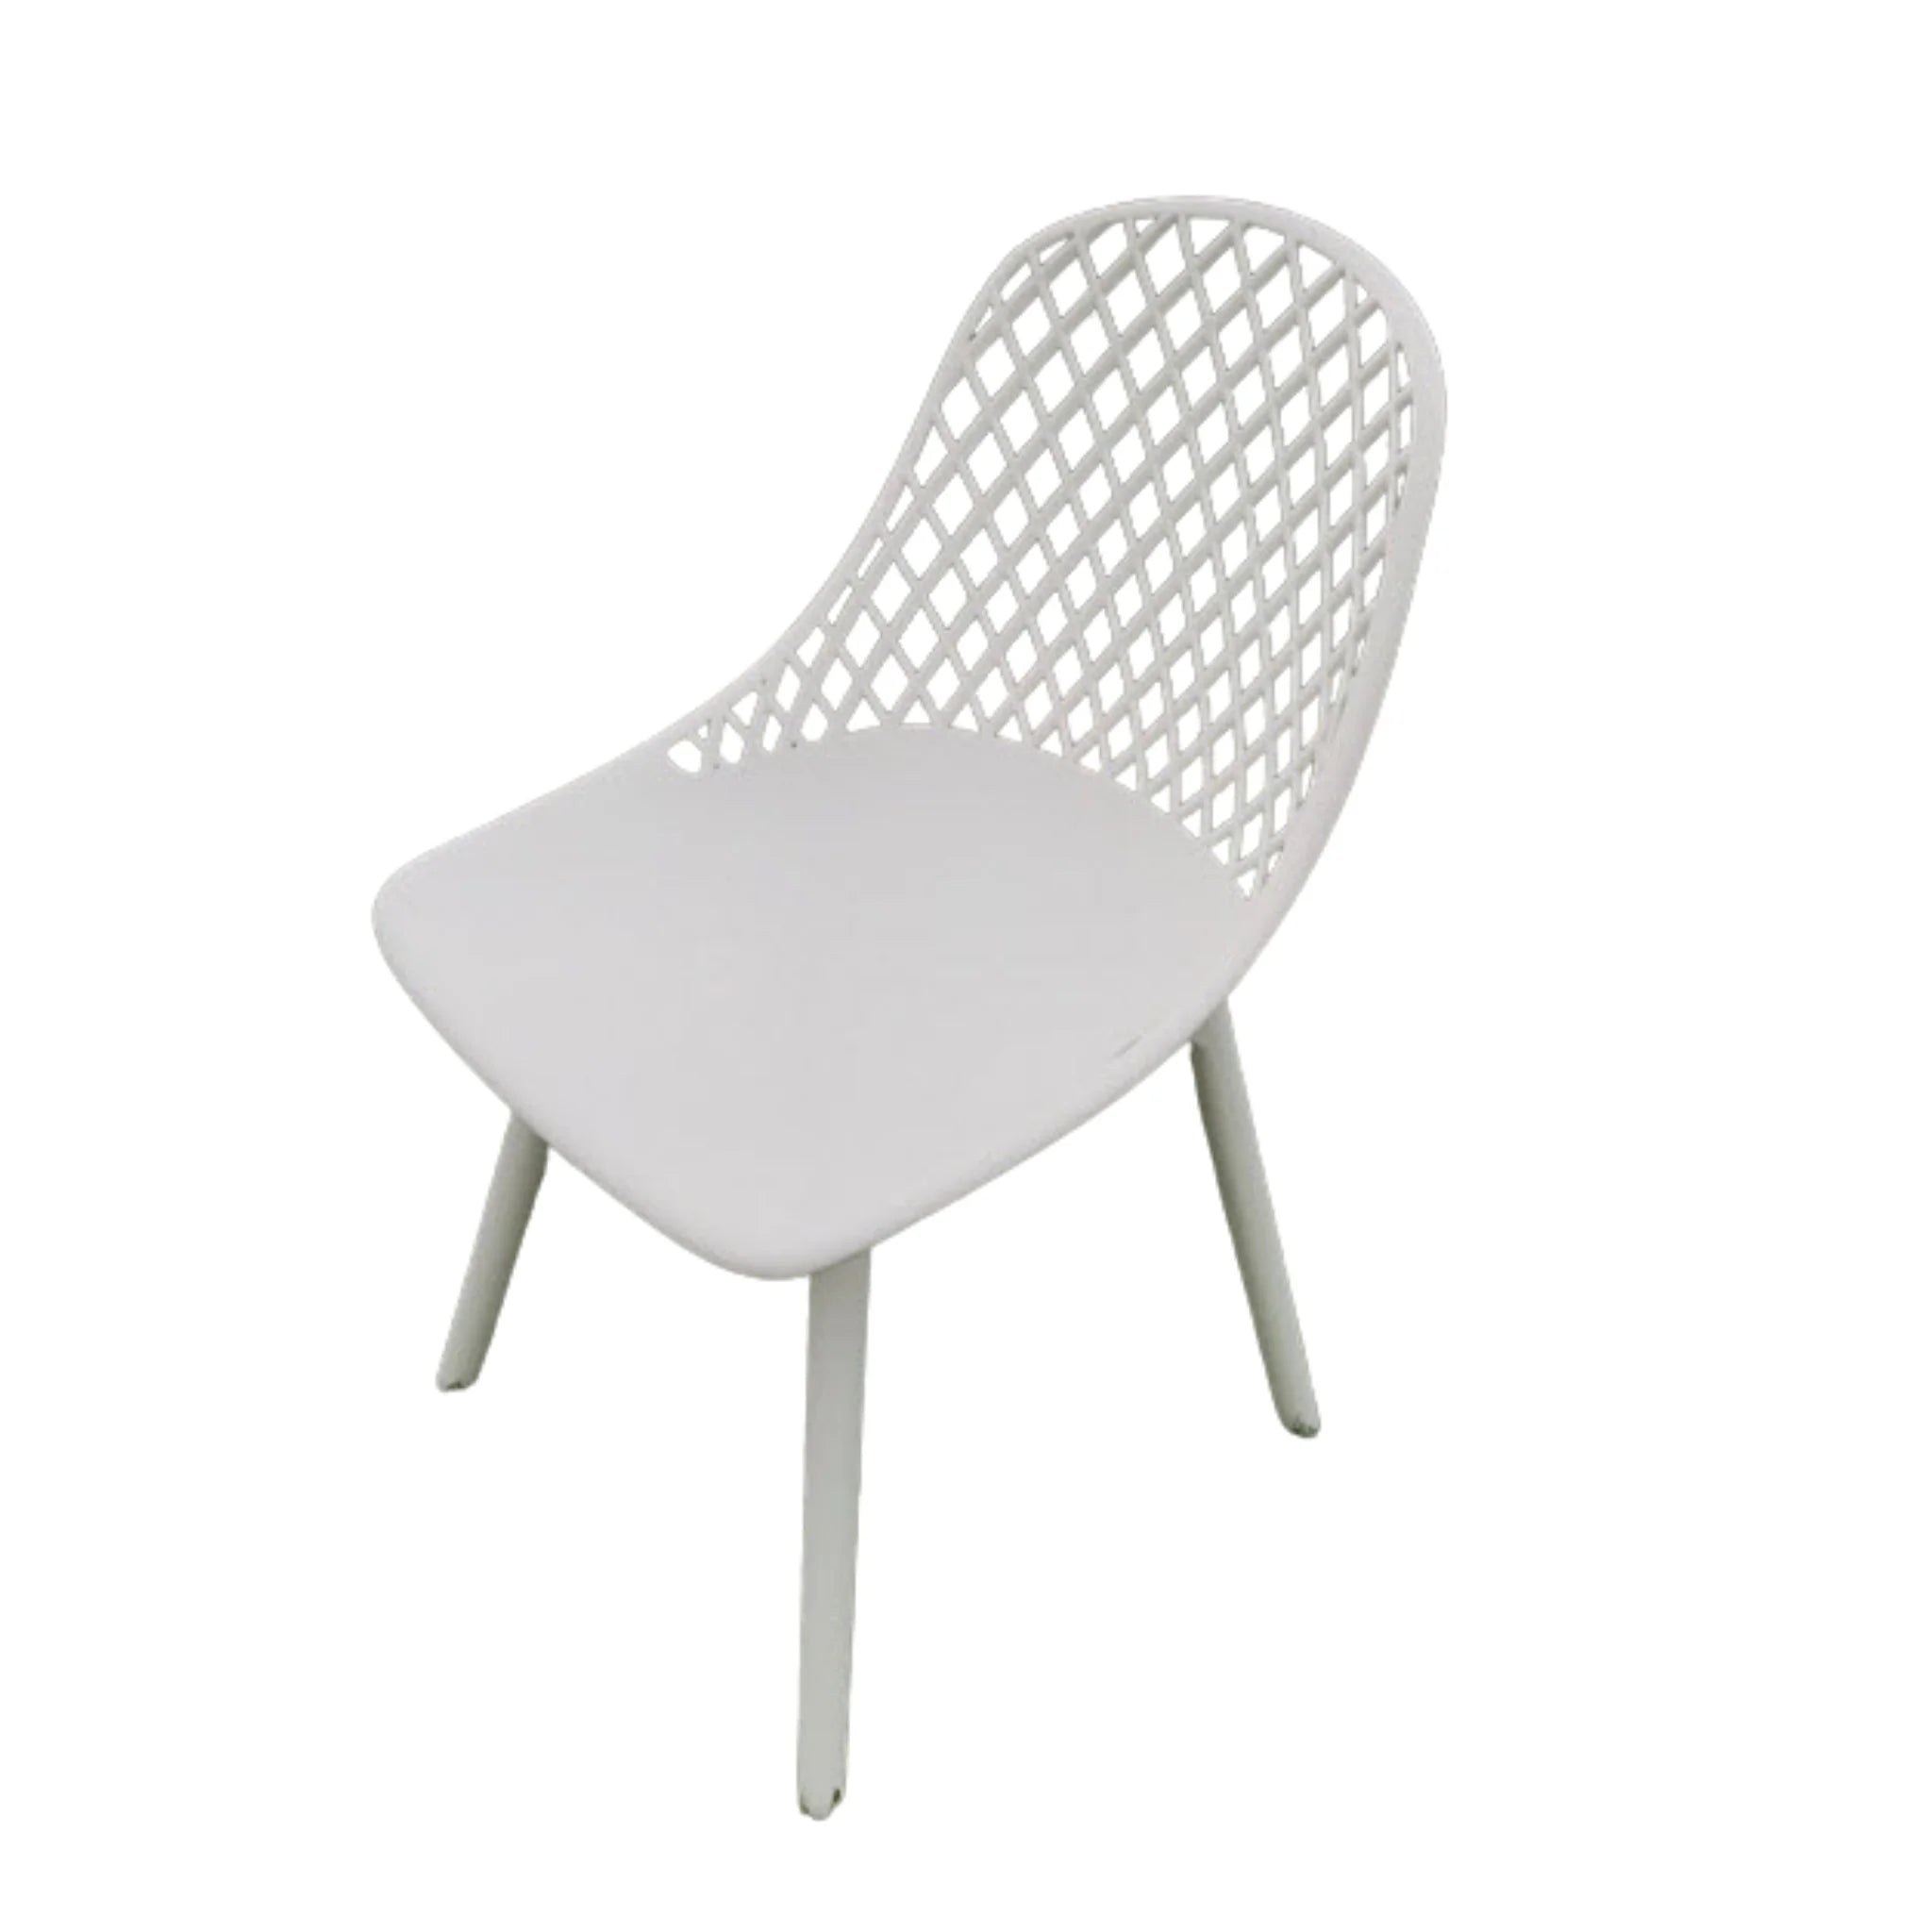 Apollo Outdoor Resin Chair